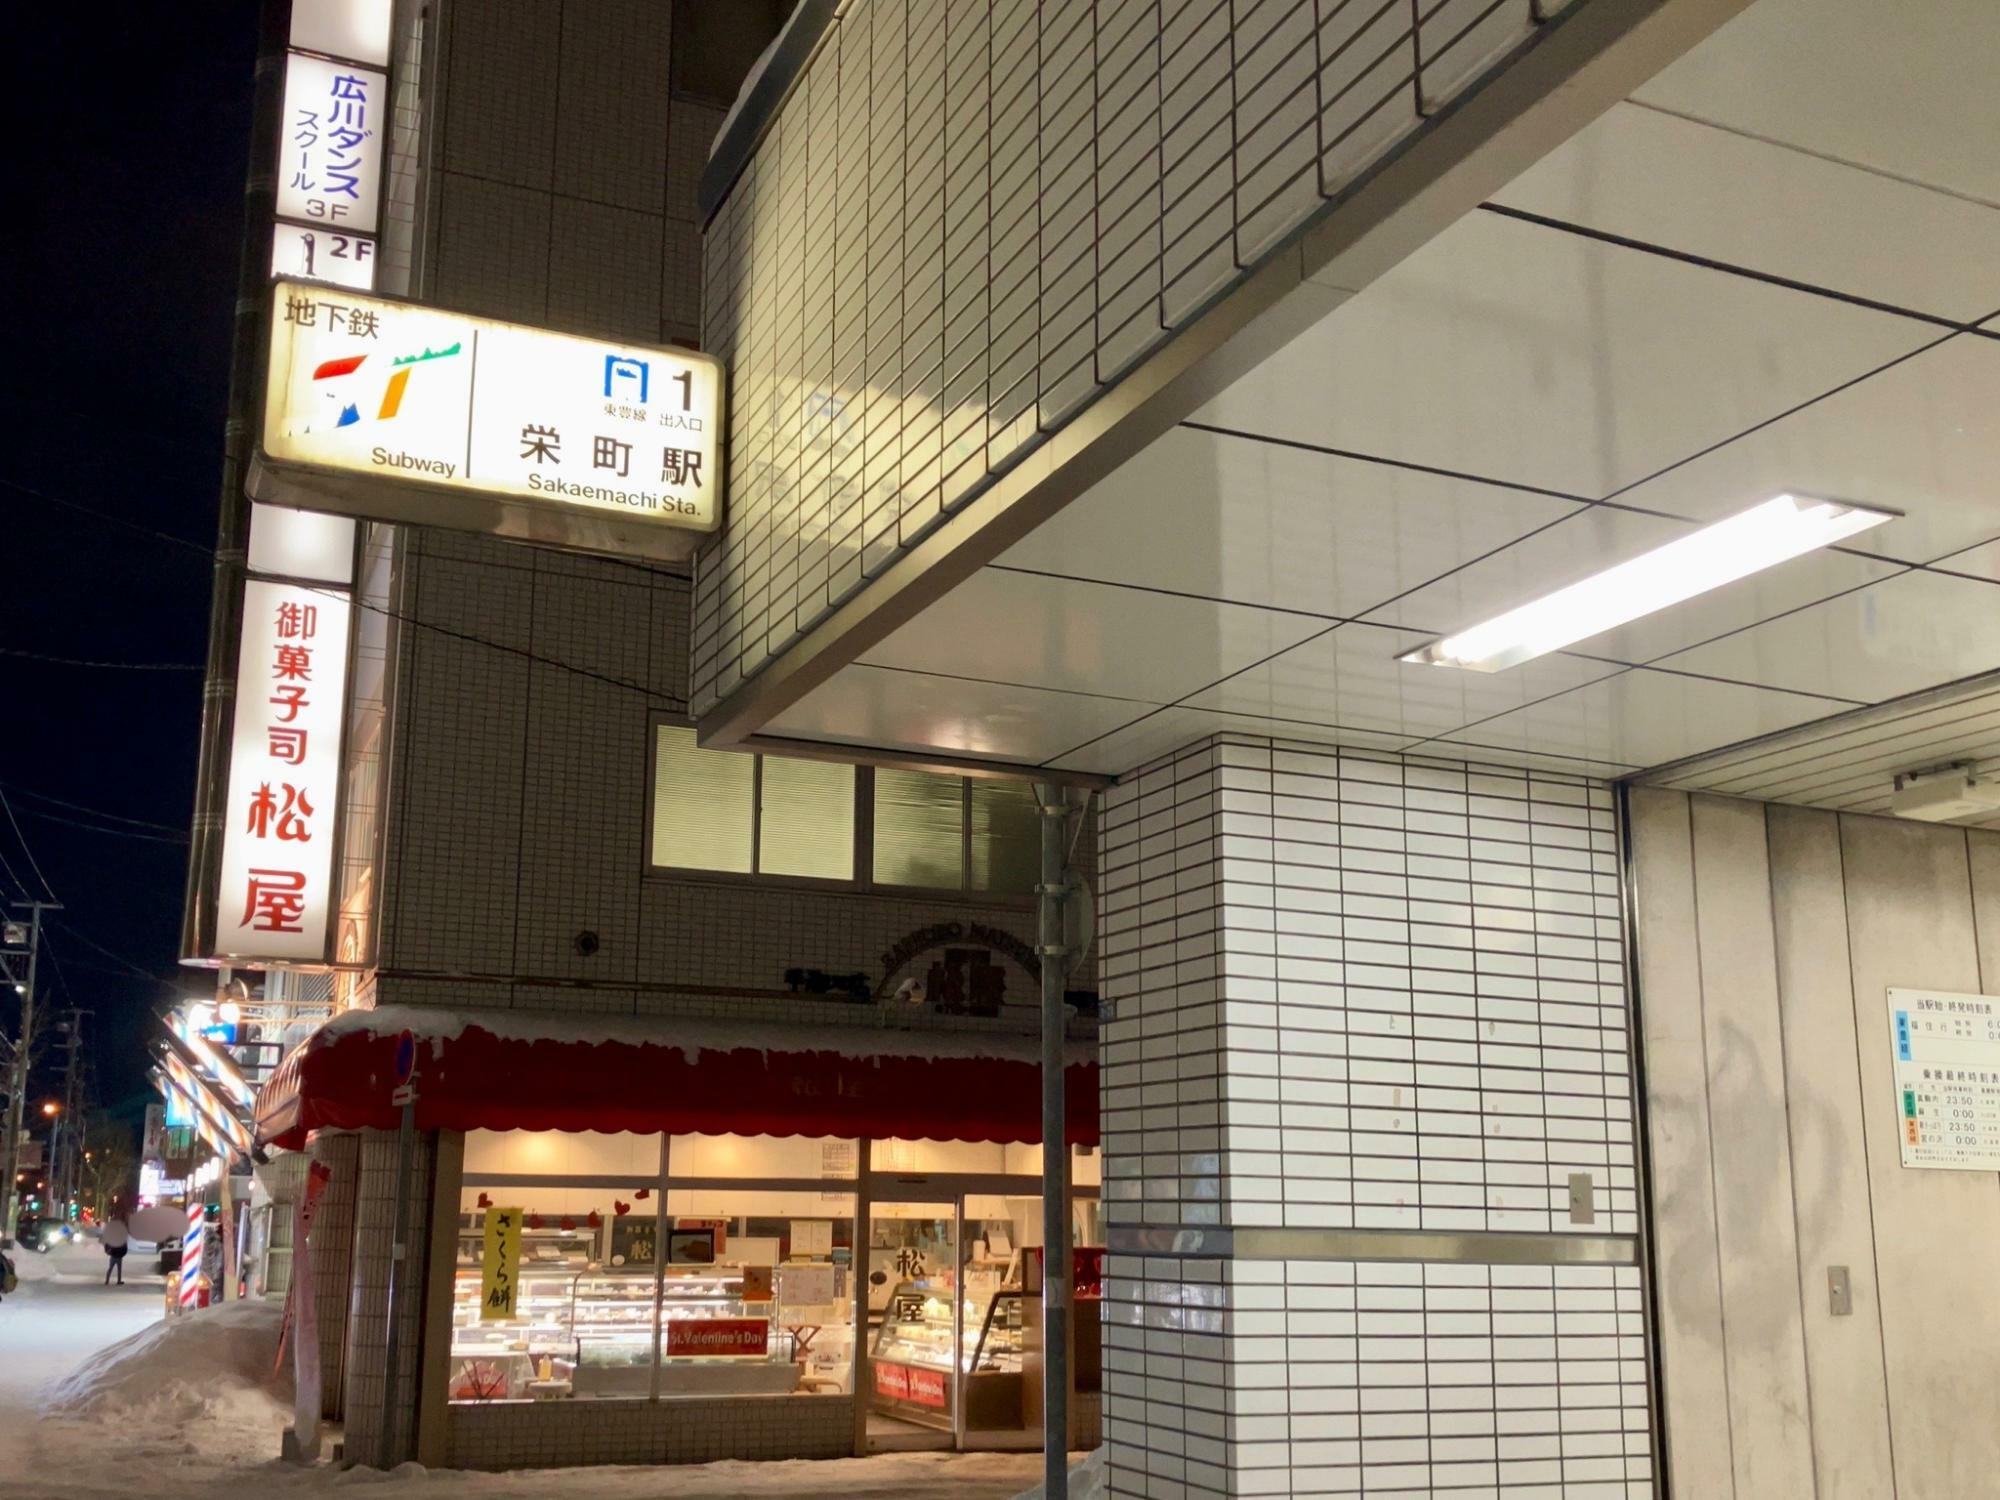 札幌地下鉄東豊線「栄町」駅1番出口